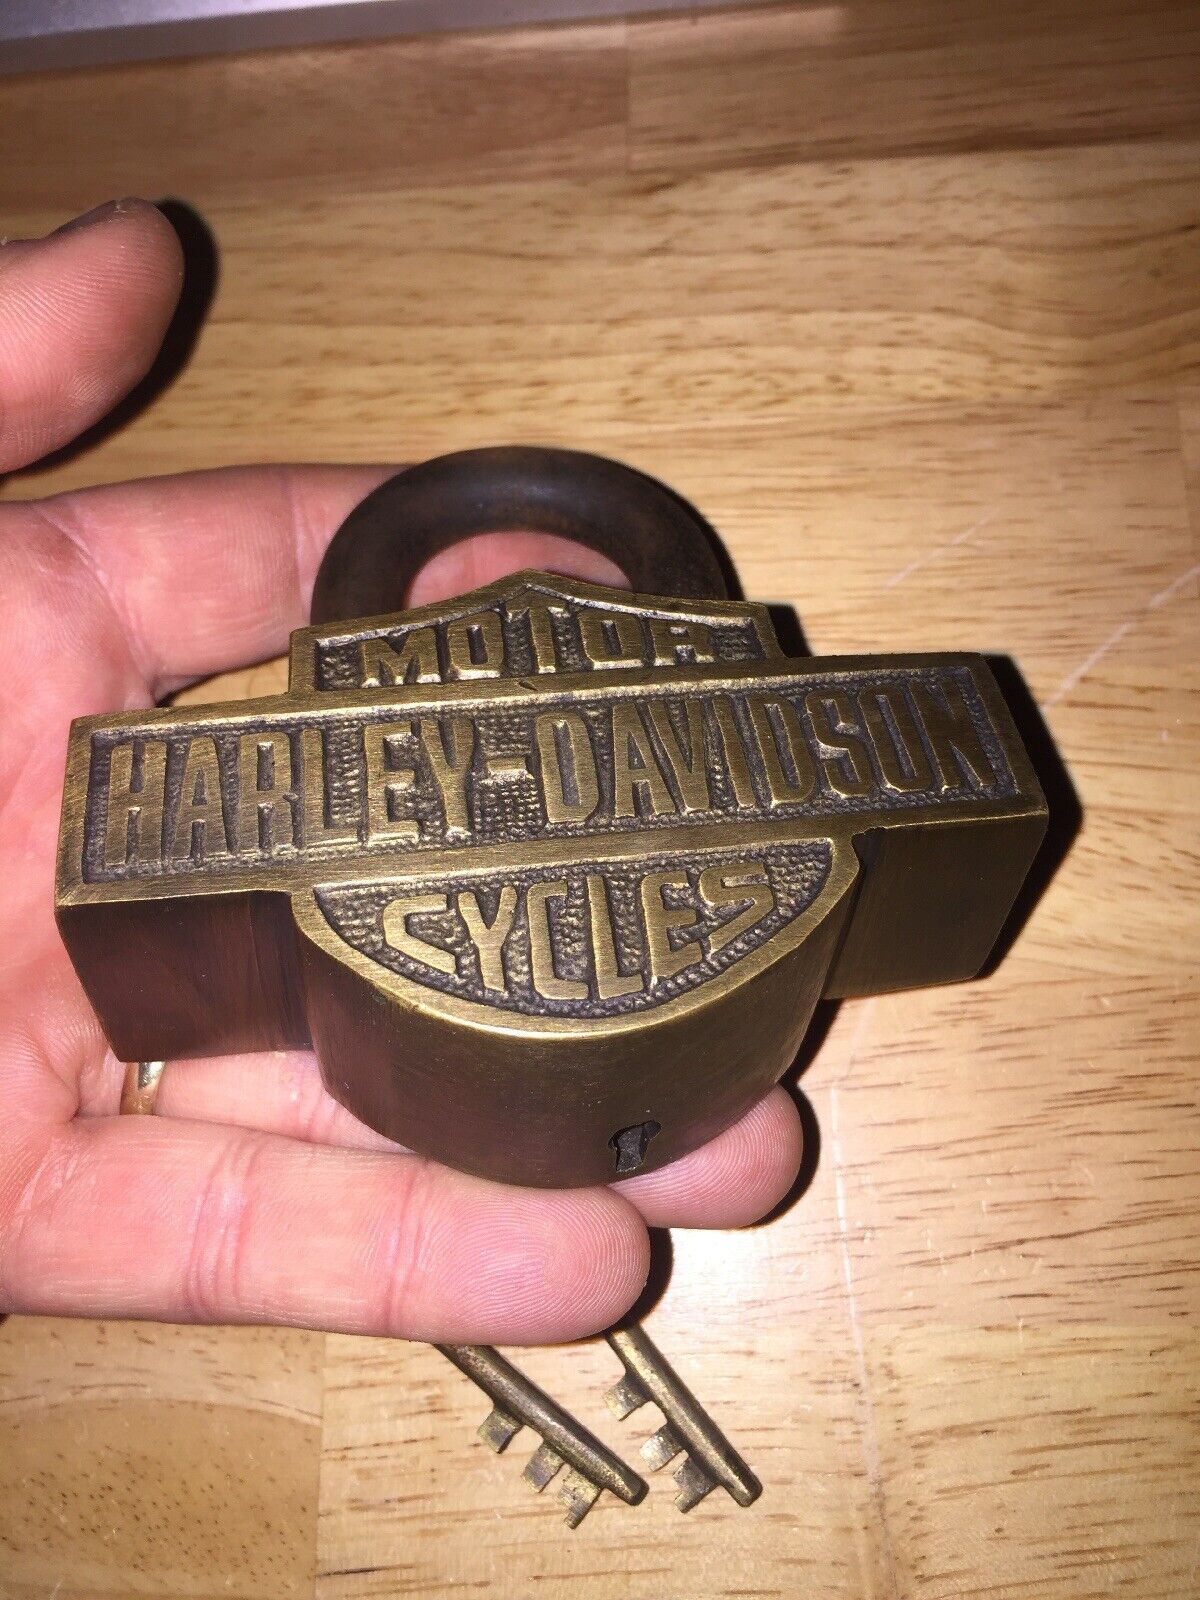 Harley Davidson Blacksmith Padlock Motorcycle Key Lock Set Lot PATINA METAL 1+LB